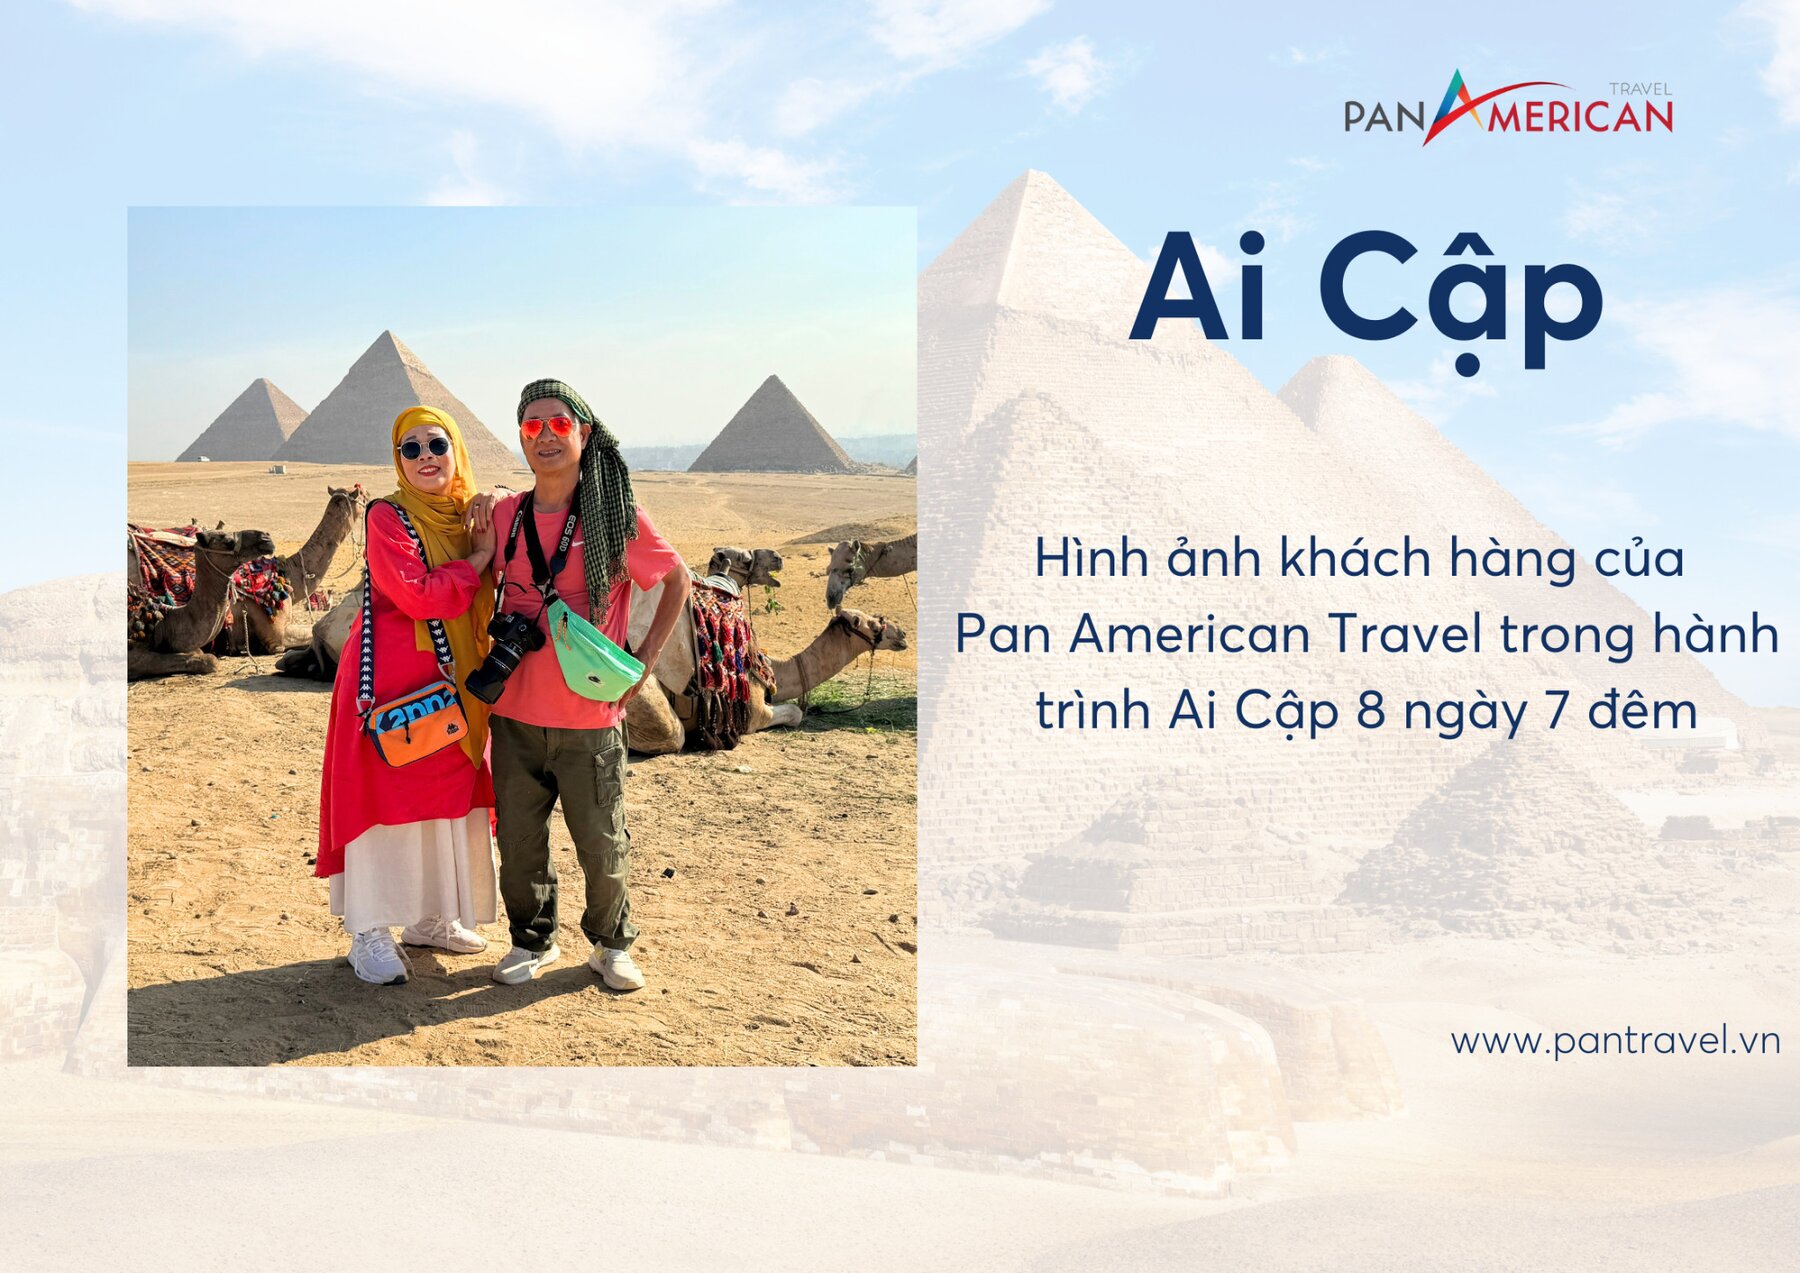 Hình ảnh khách hàng của Pan American Travel trong tour du lịch châu Phi - Hành trình khám phá Ai Cập cổ đại 8 ngày 7 đêm. 